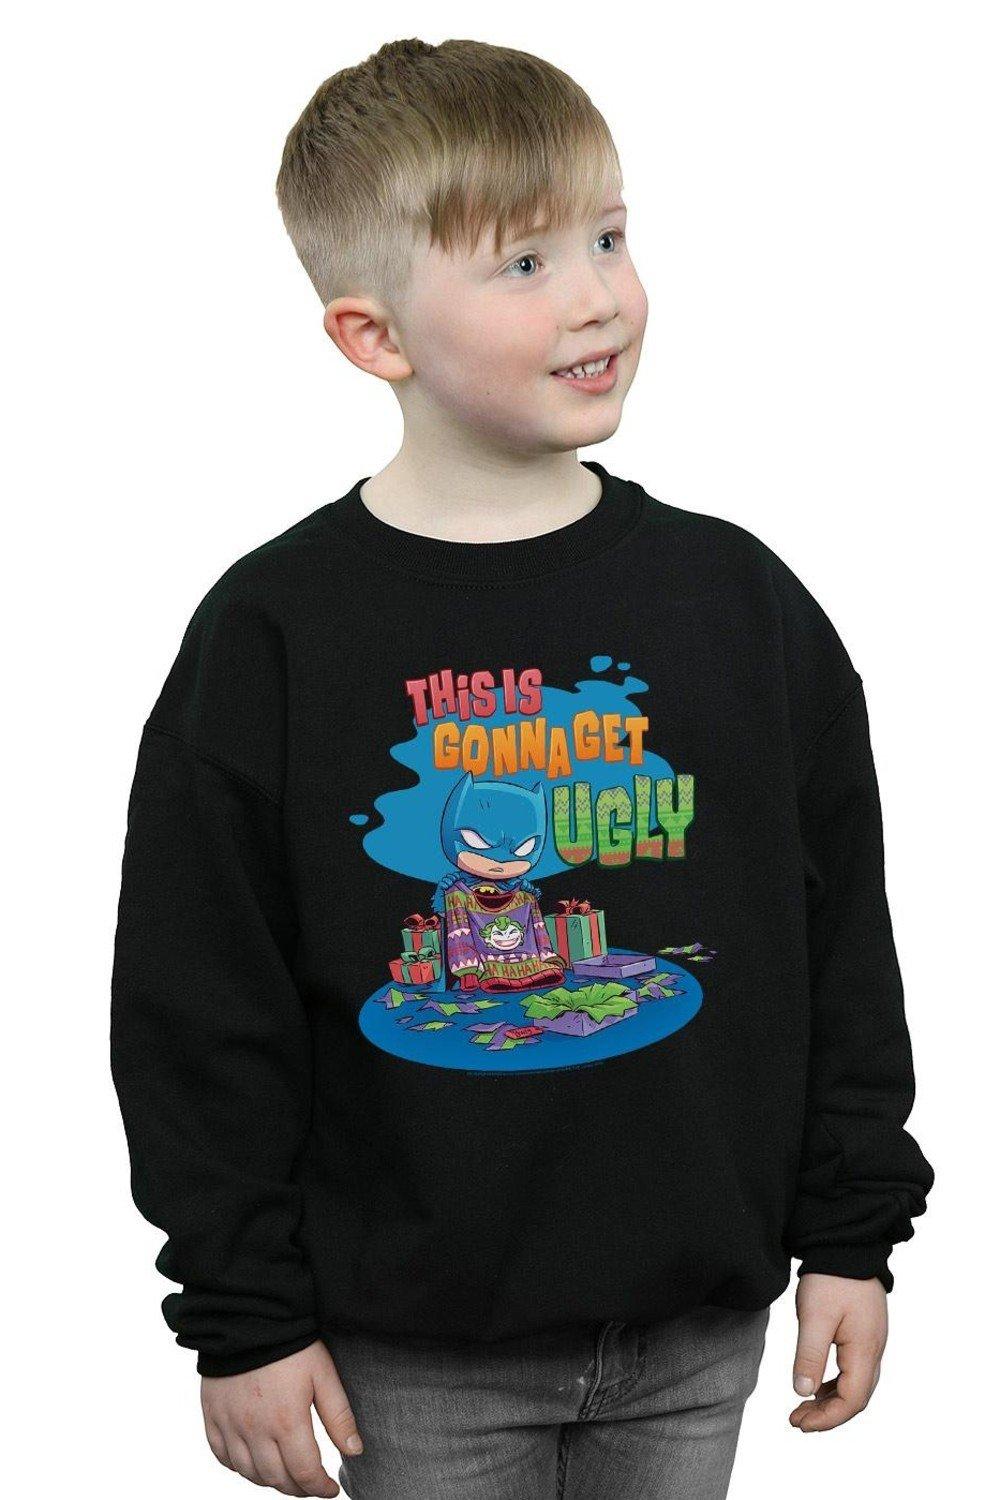 Super Friends Batman Joker Christmas Jumper Sweatshirt